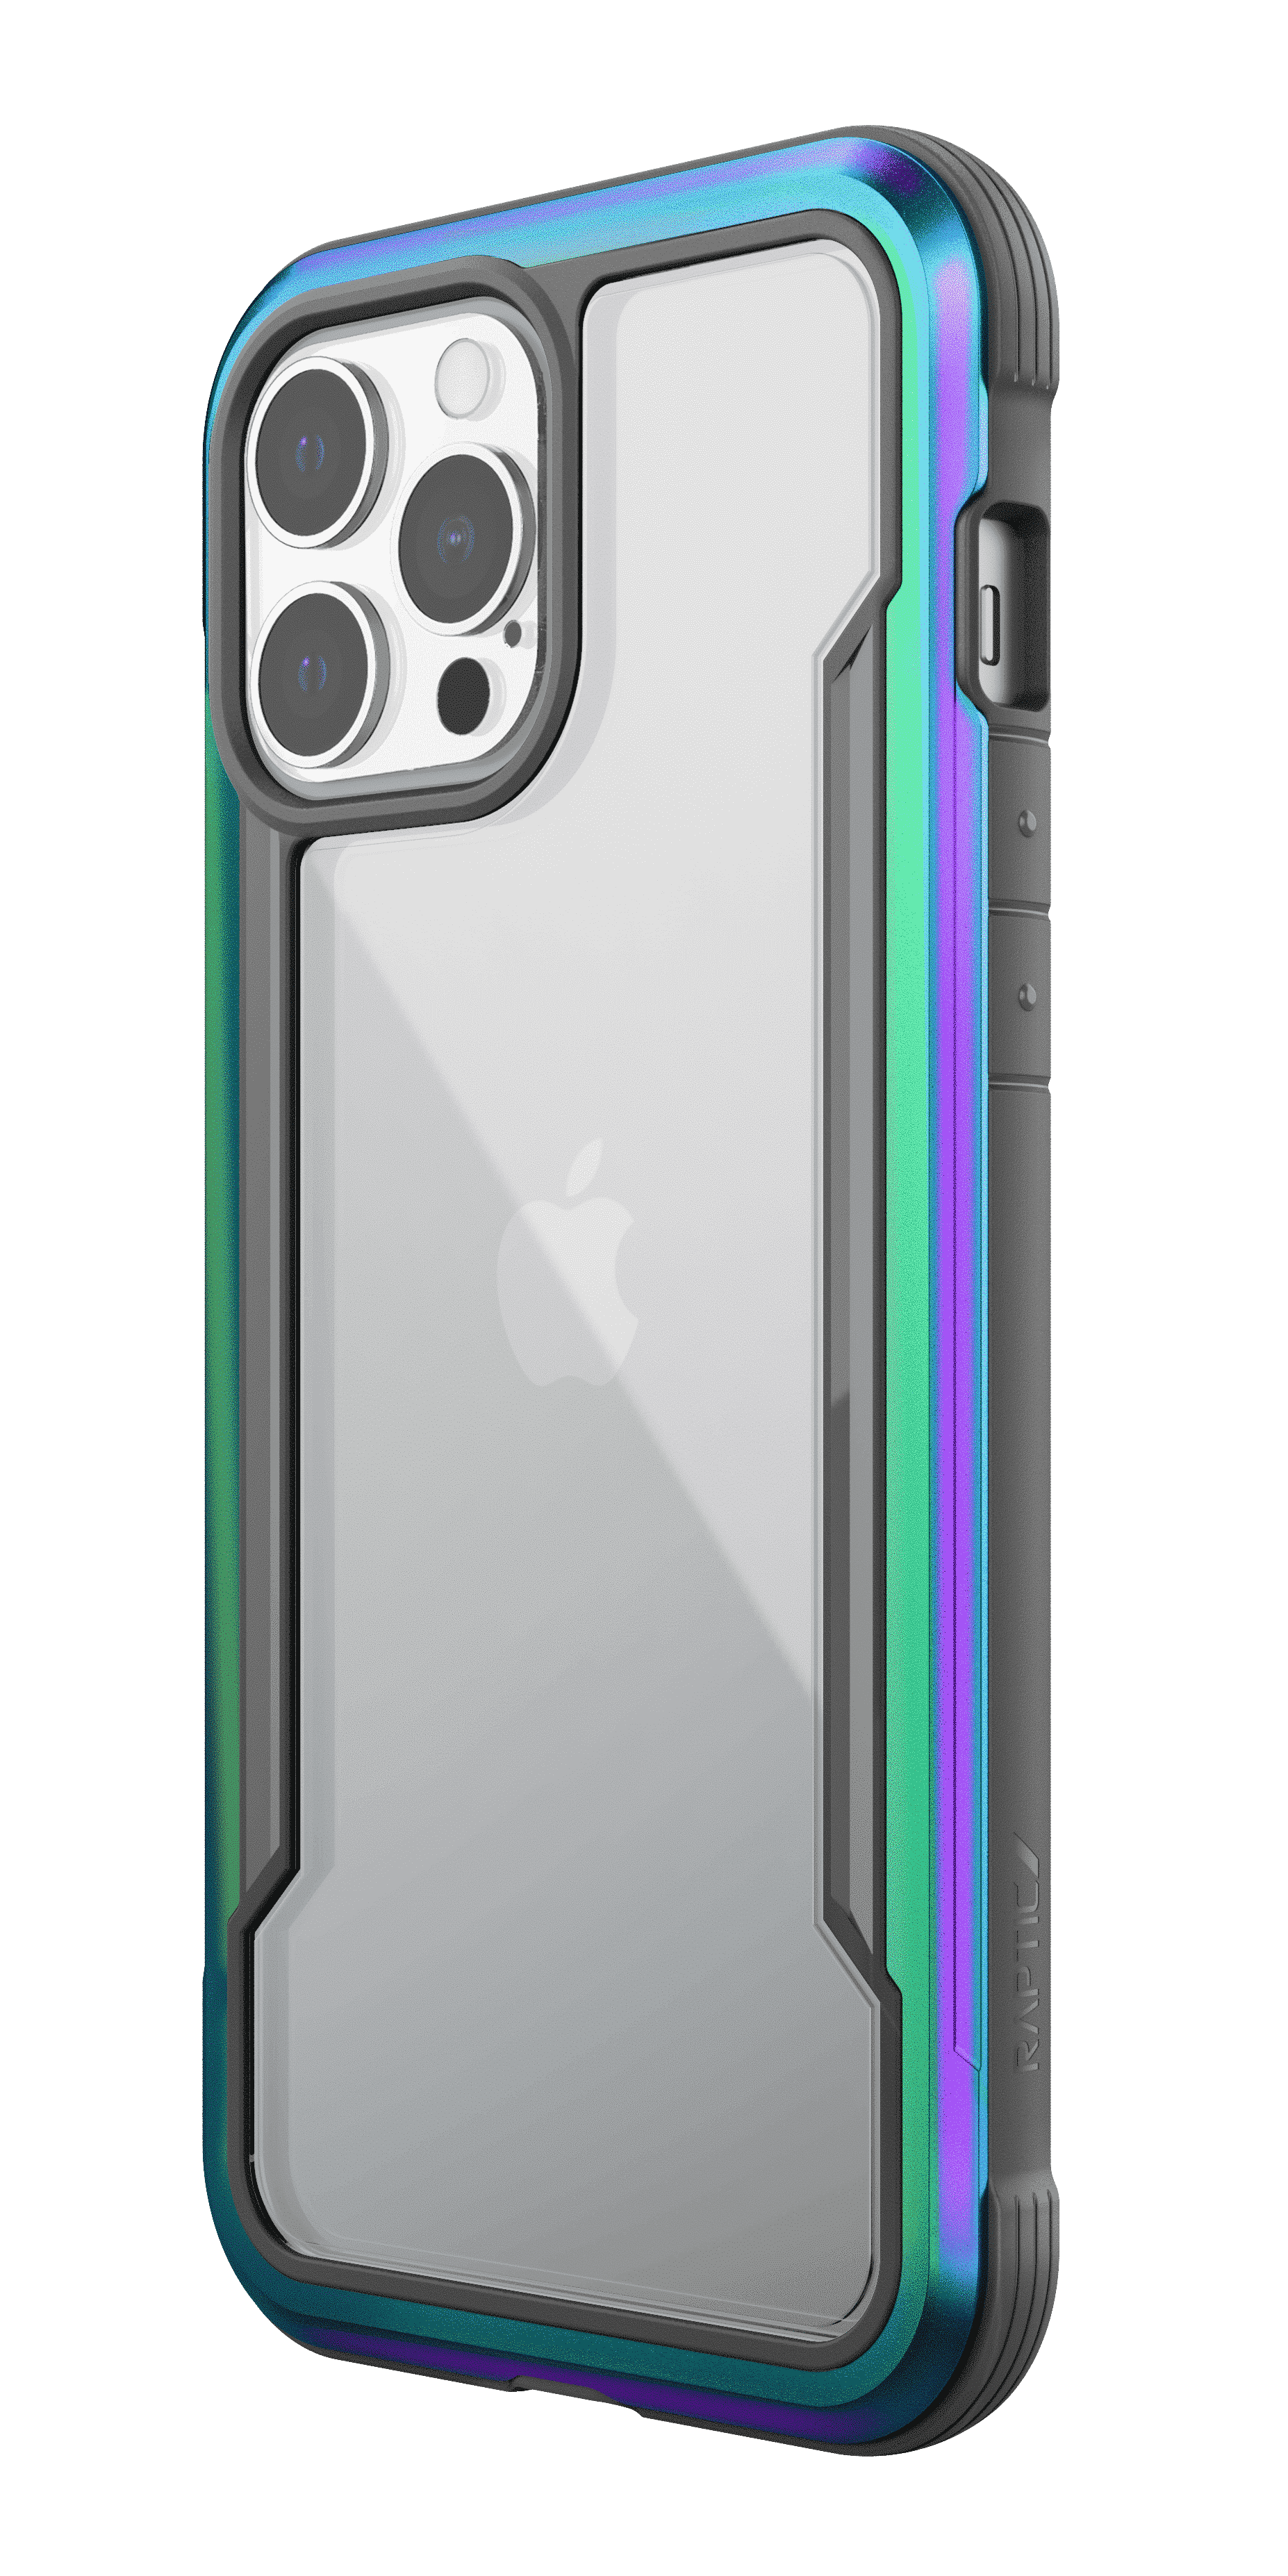 เคส Raptic รุ่น Shield Pro (Anti-Bacterial) - iPhone 13 Pro Max - Iridescent